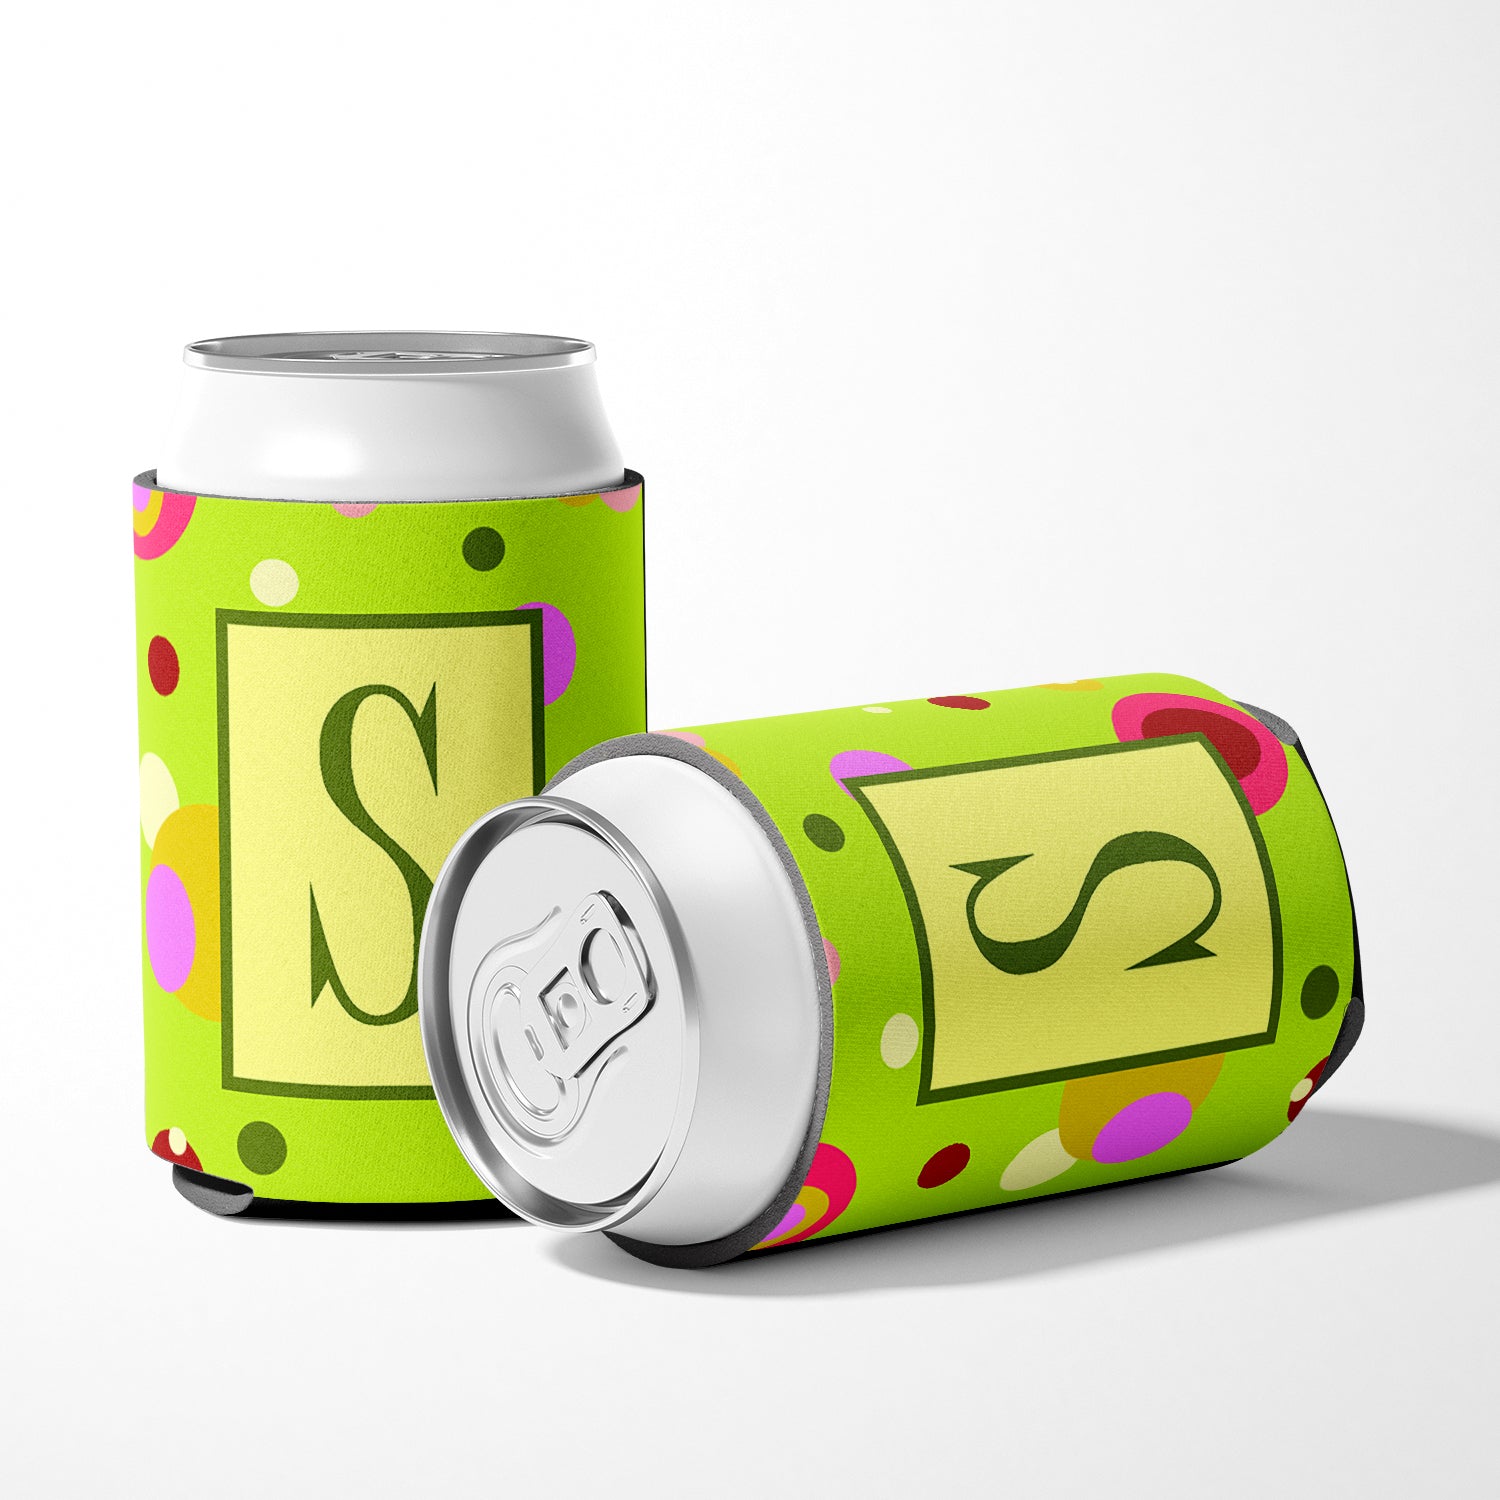 Letter S Initial Monogram - Green Can or Bottle Beverage Insulator Hugger.